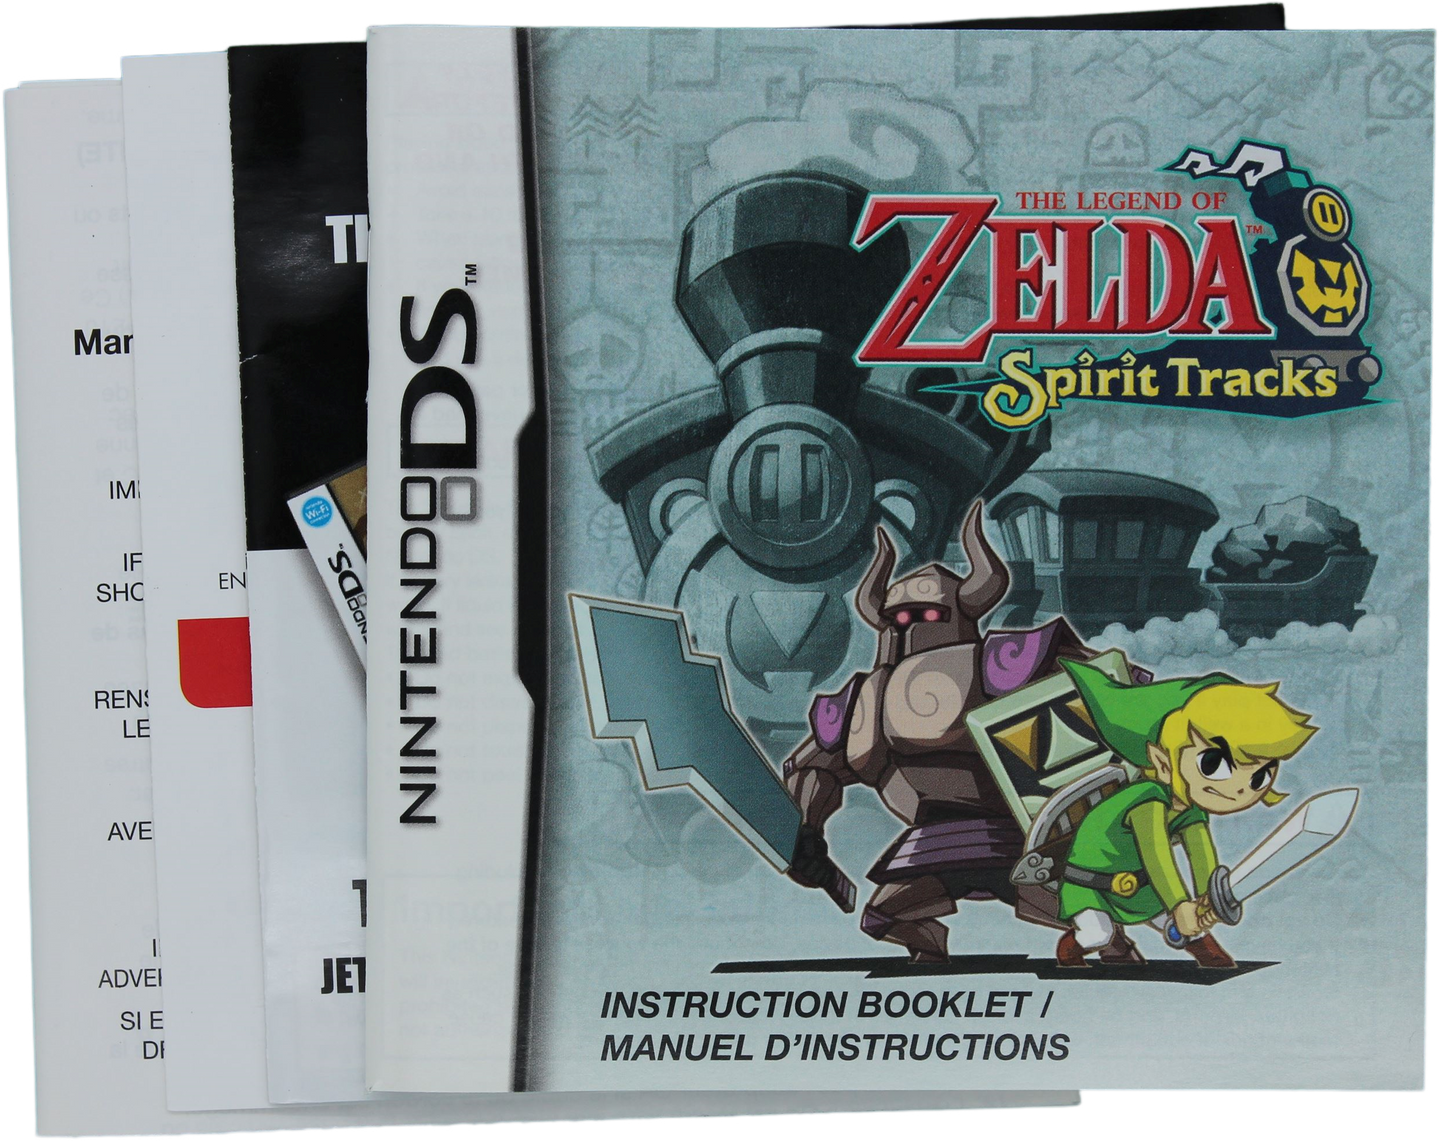 The Legend Of Zelda: Spirit Tracks (DS)